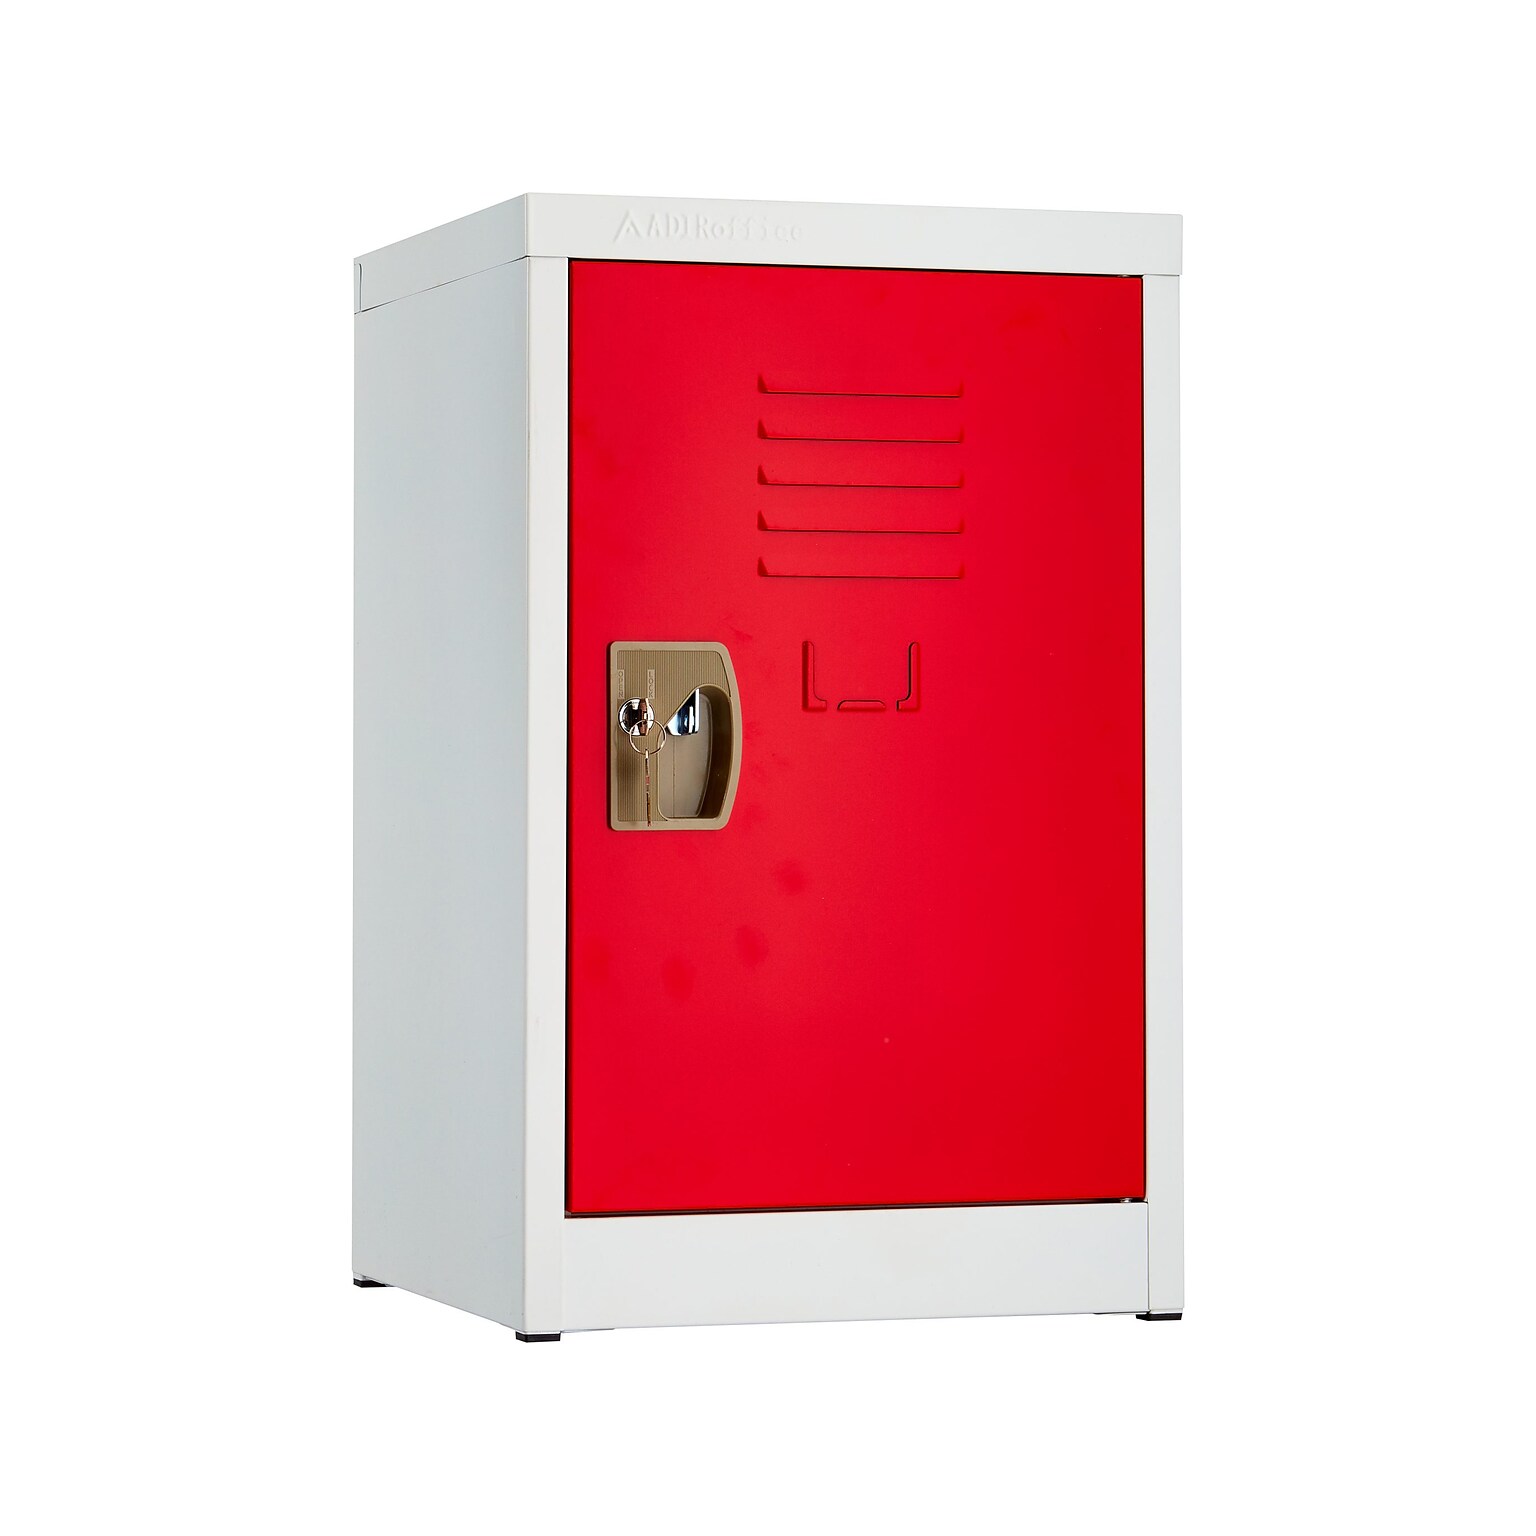 AdirOffice 24 Red Storage Locker (629-02-RED)